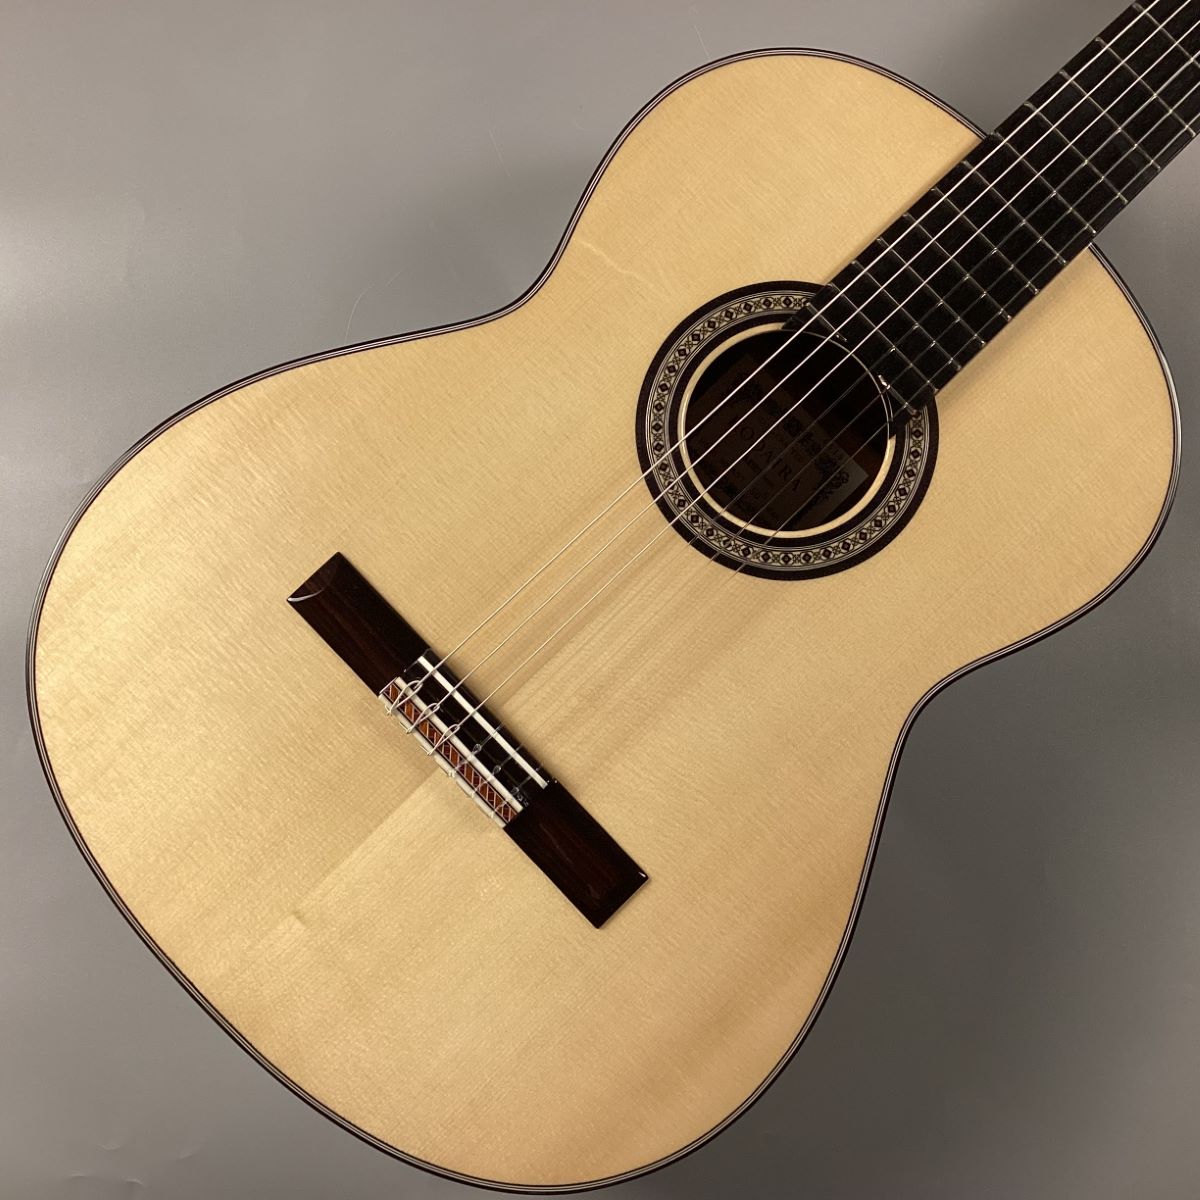 KODAIRA KODAIRA AST-150S 650mm クラシックギター【現物画像】 小平